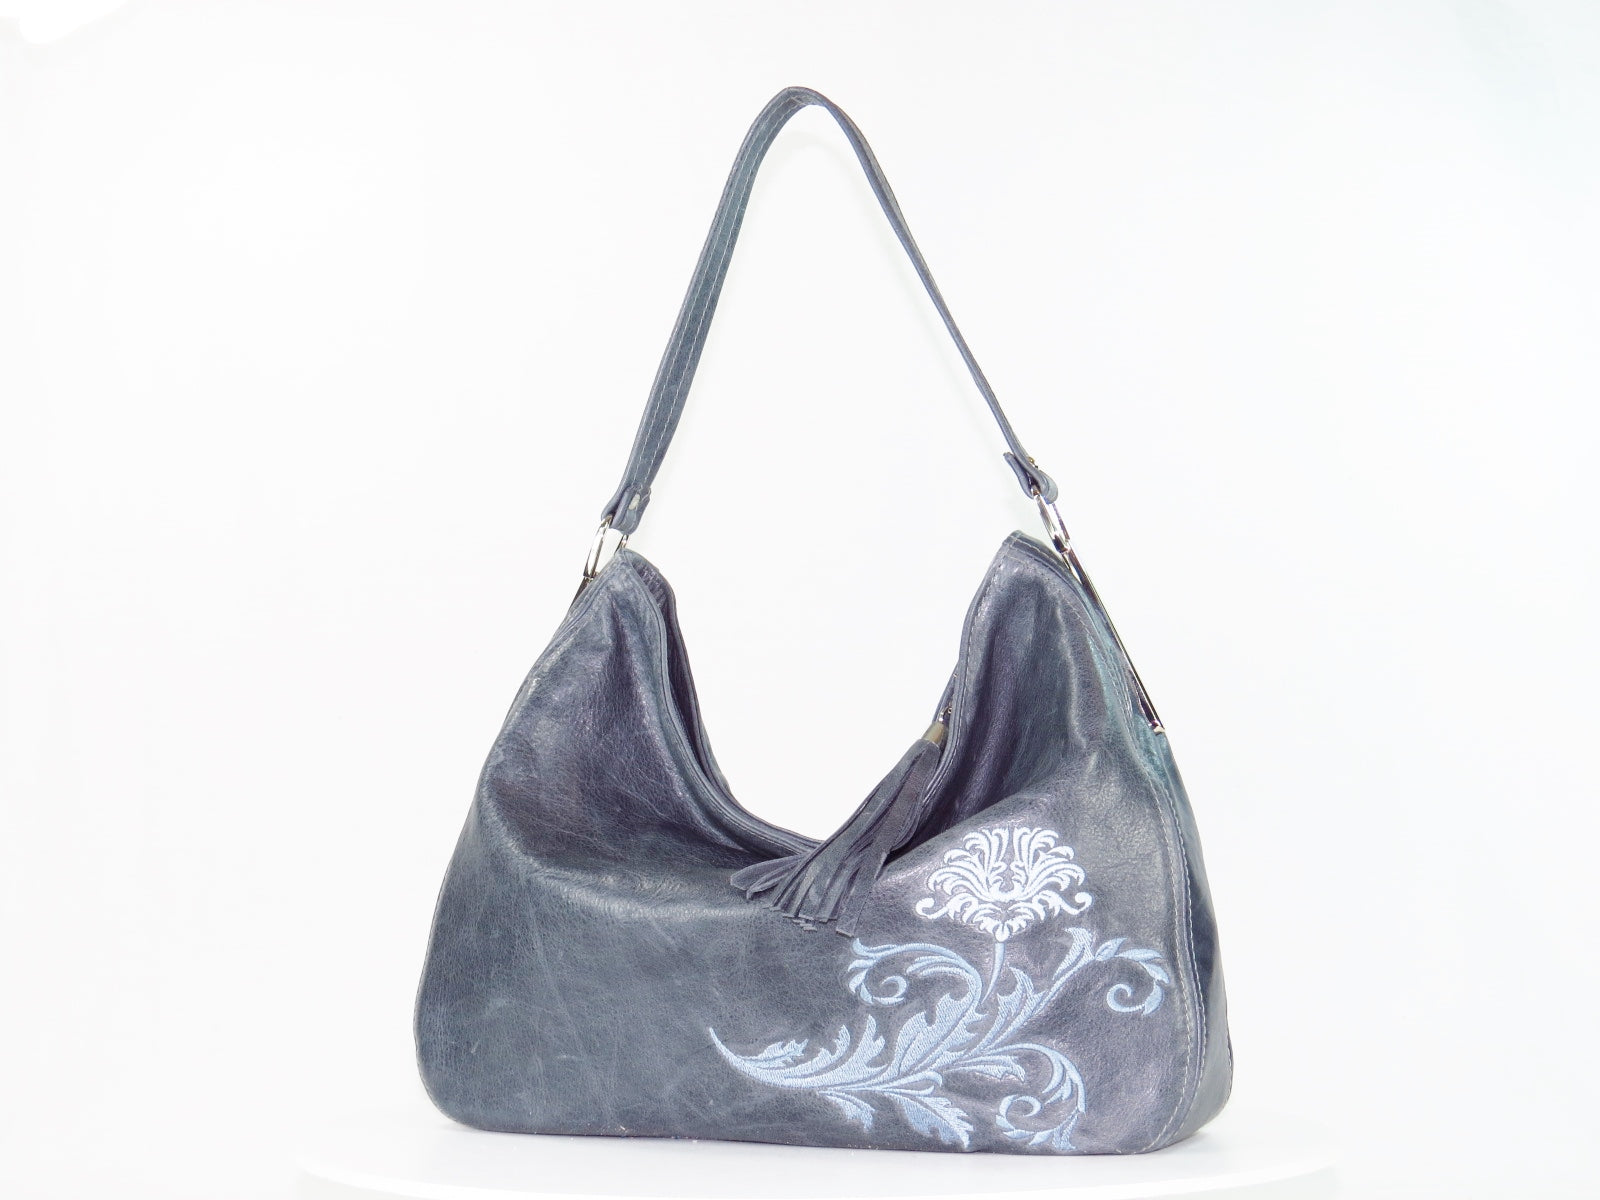 Embroidered Slate Gray Leather Slouchy Hobo Handbag